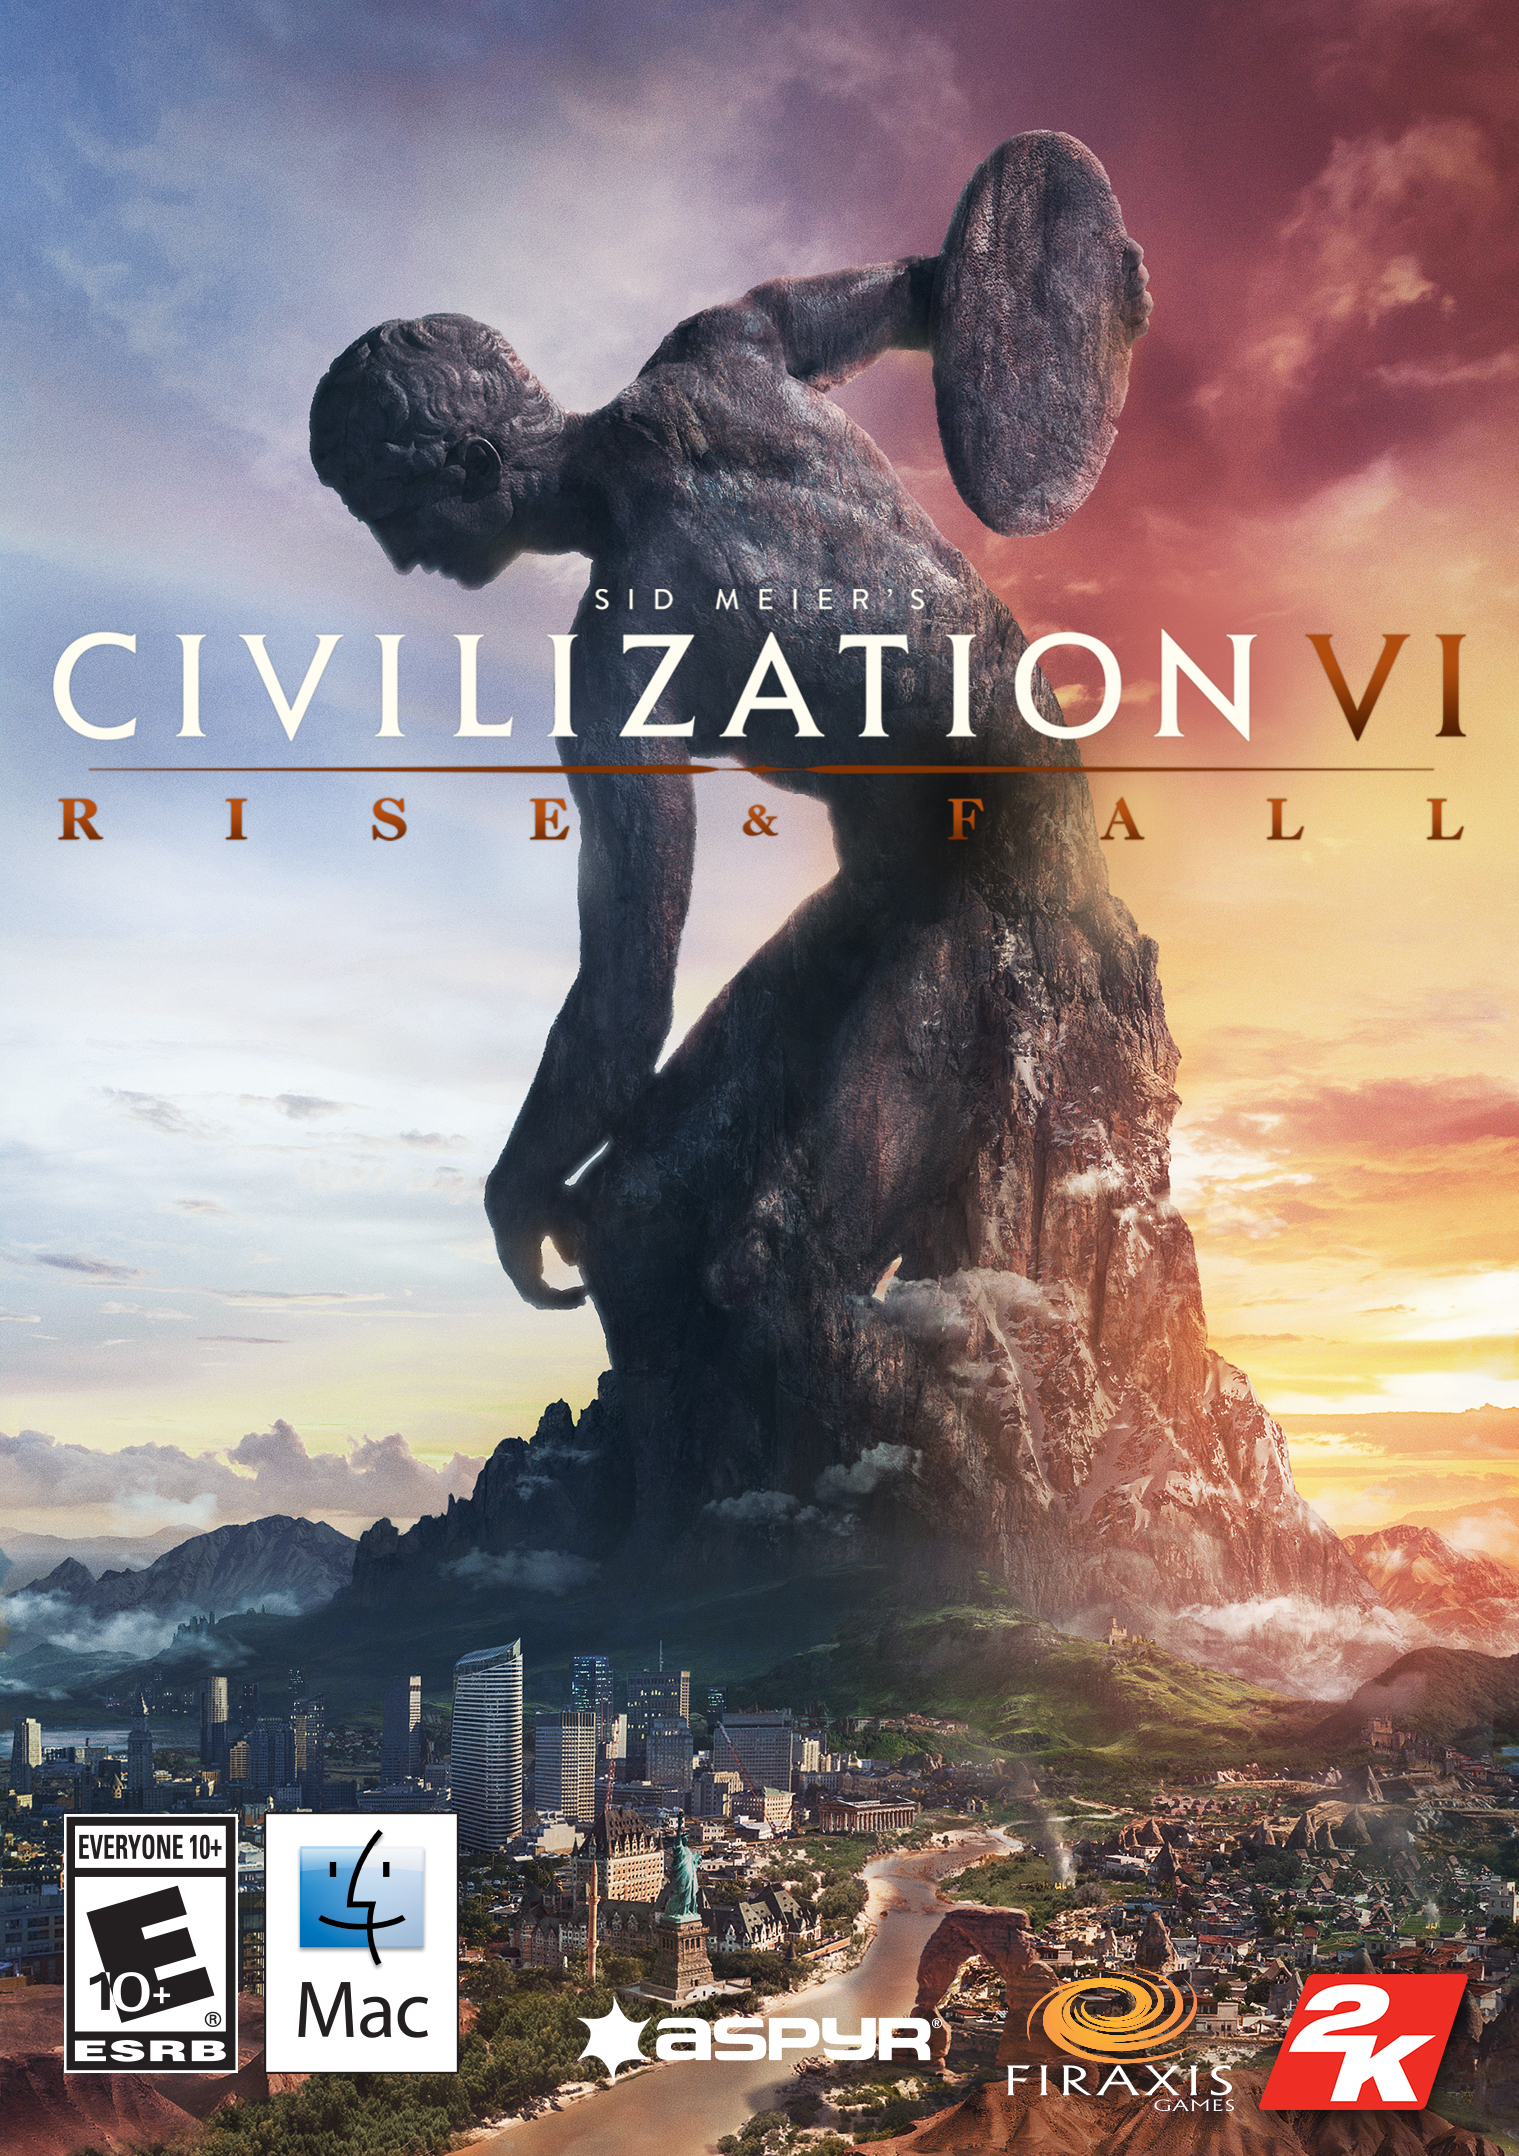 Civilization 6 review